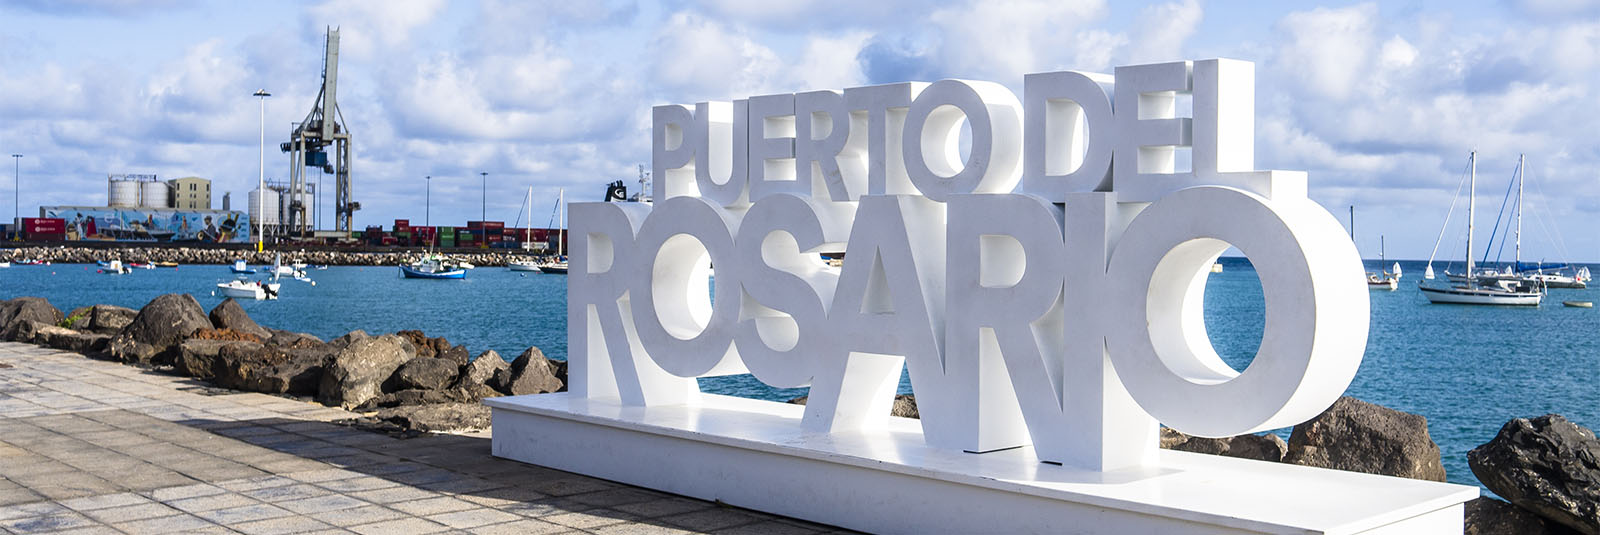 Der Paseo von Puerto del Rosario Fuerteventura.